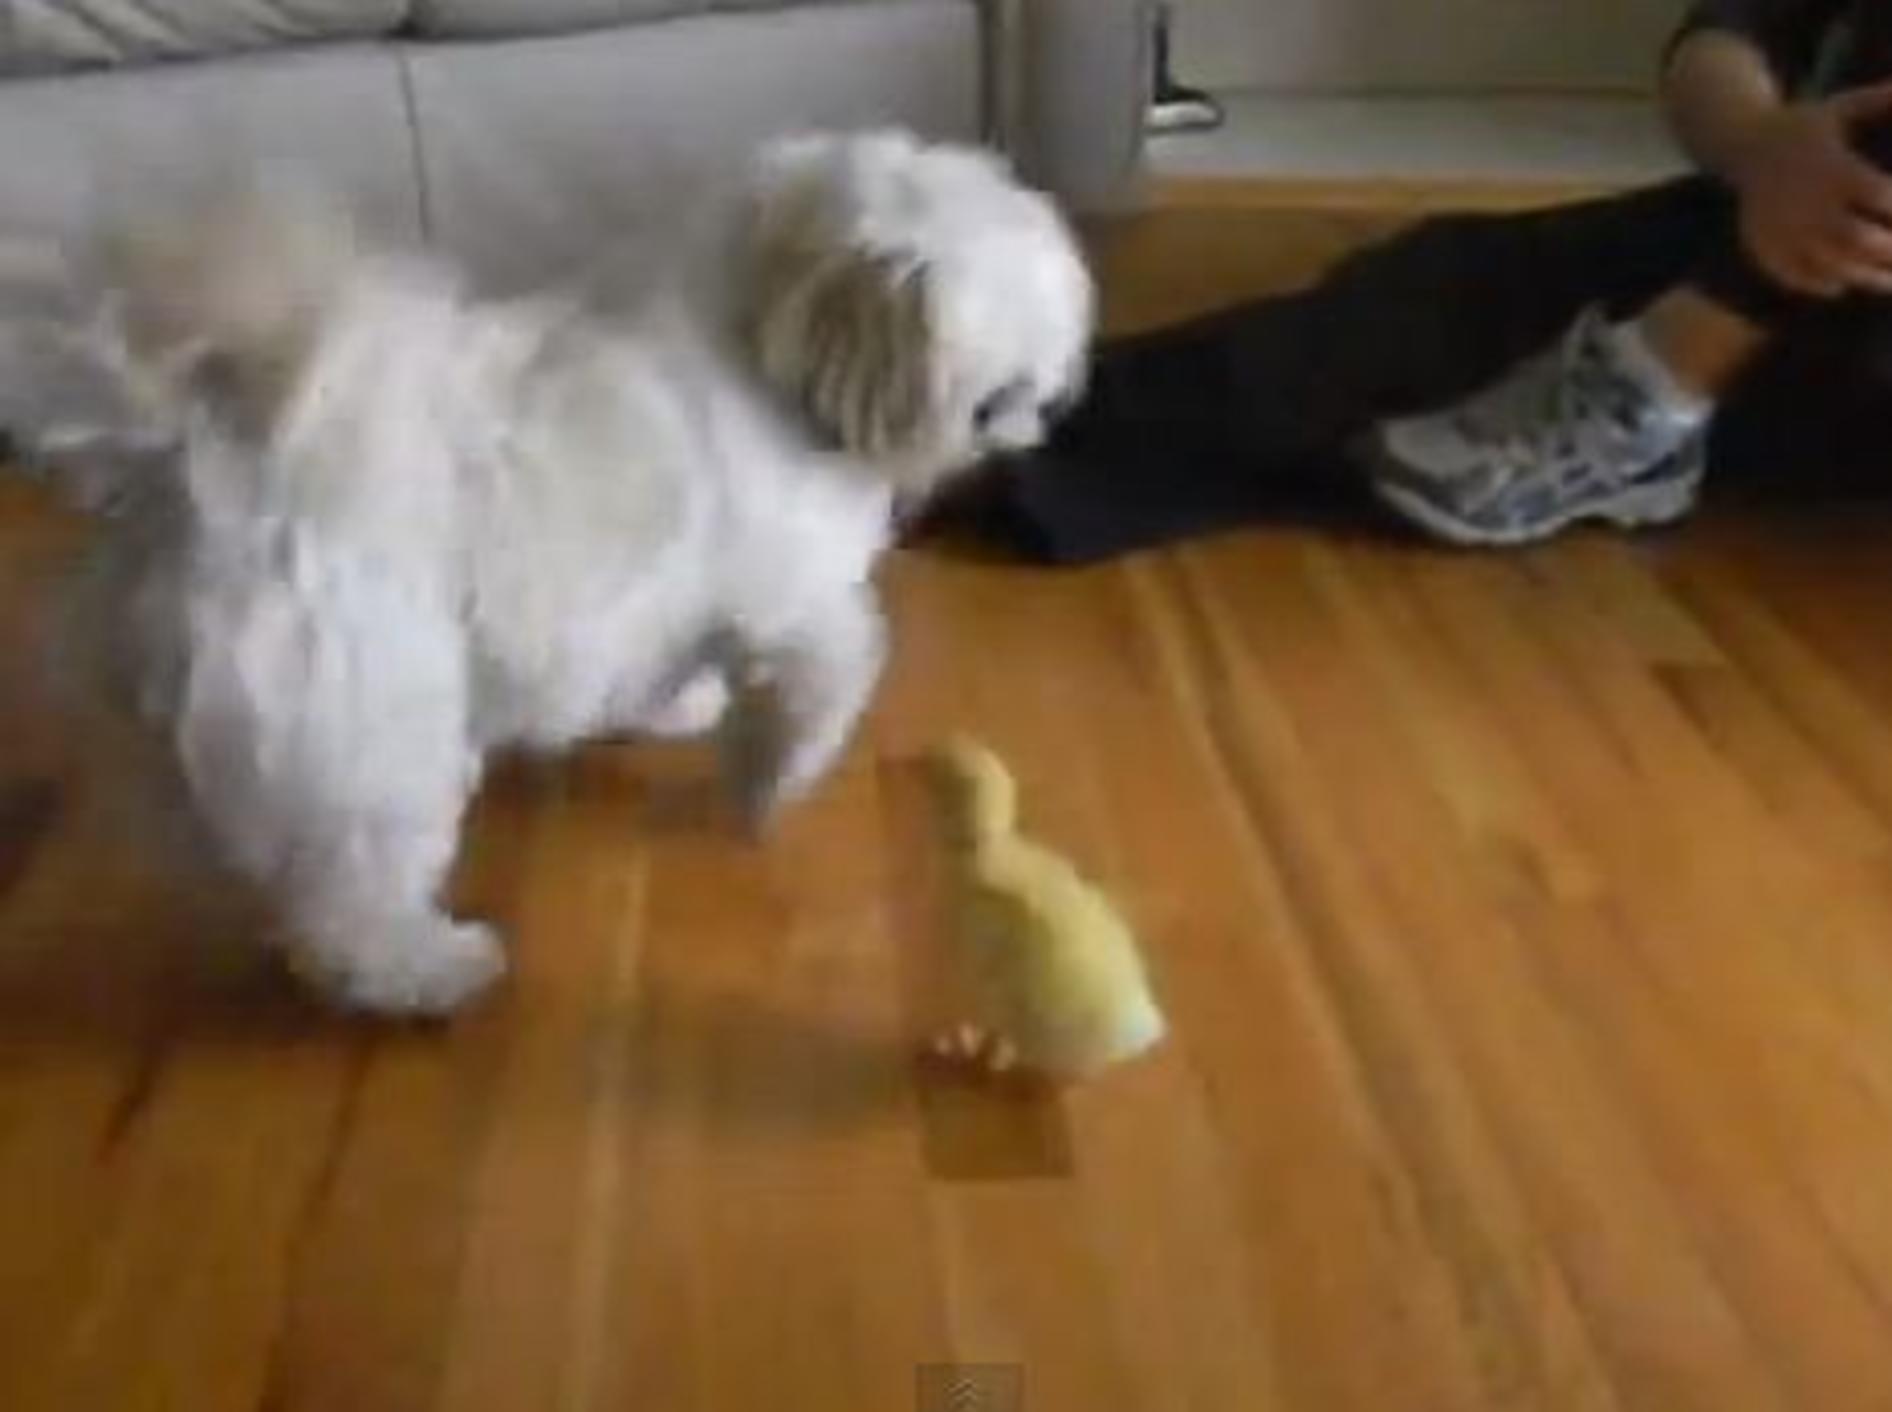 Süßer Hund hat Angst vor einem kleinen Entenküken — Bild: Youtube / Elisa Young